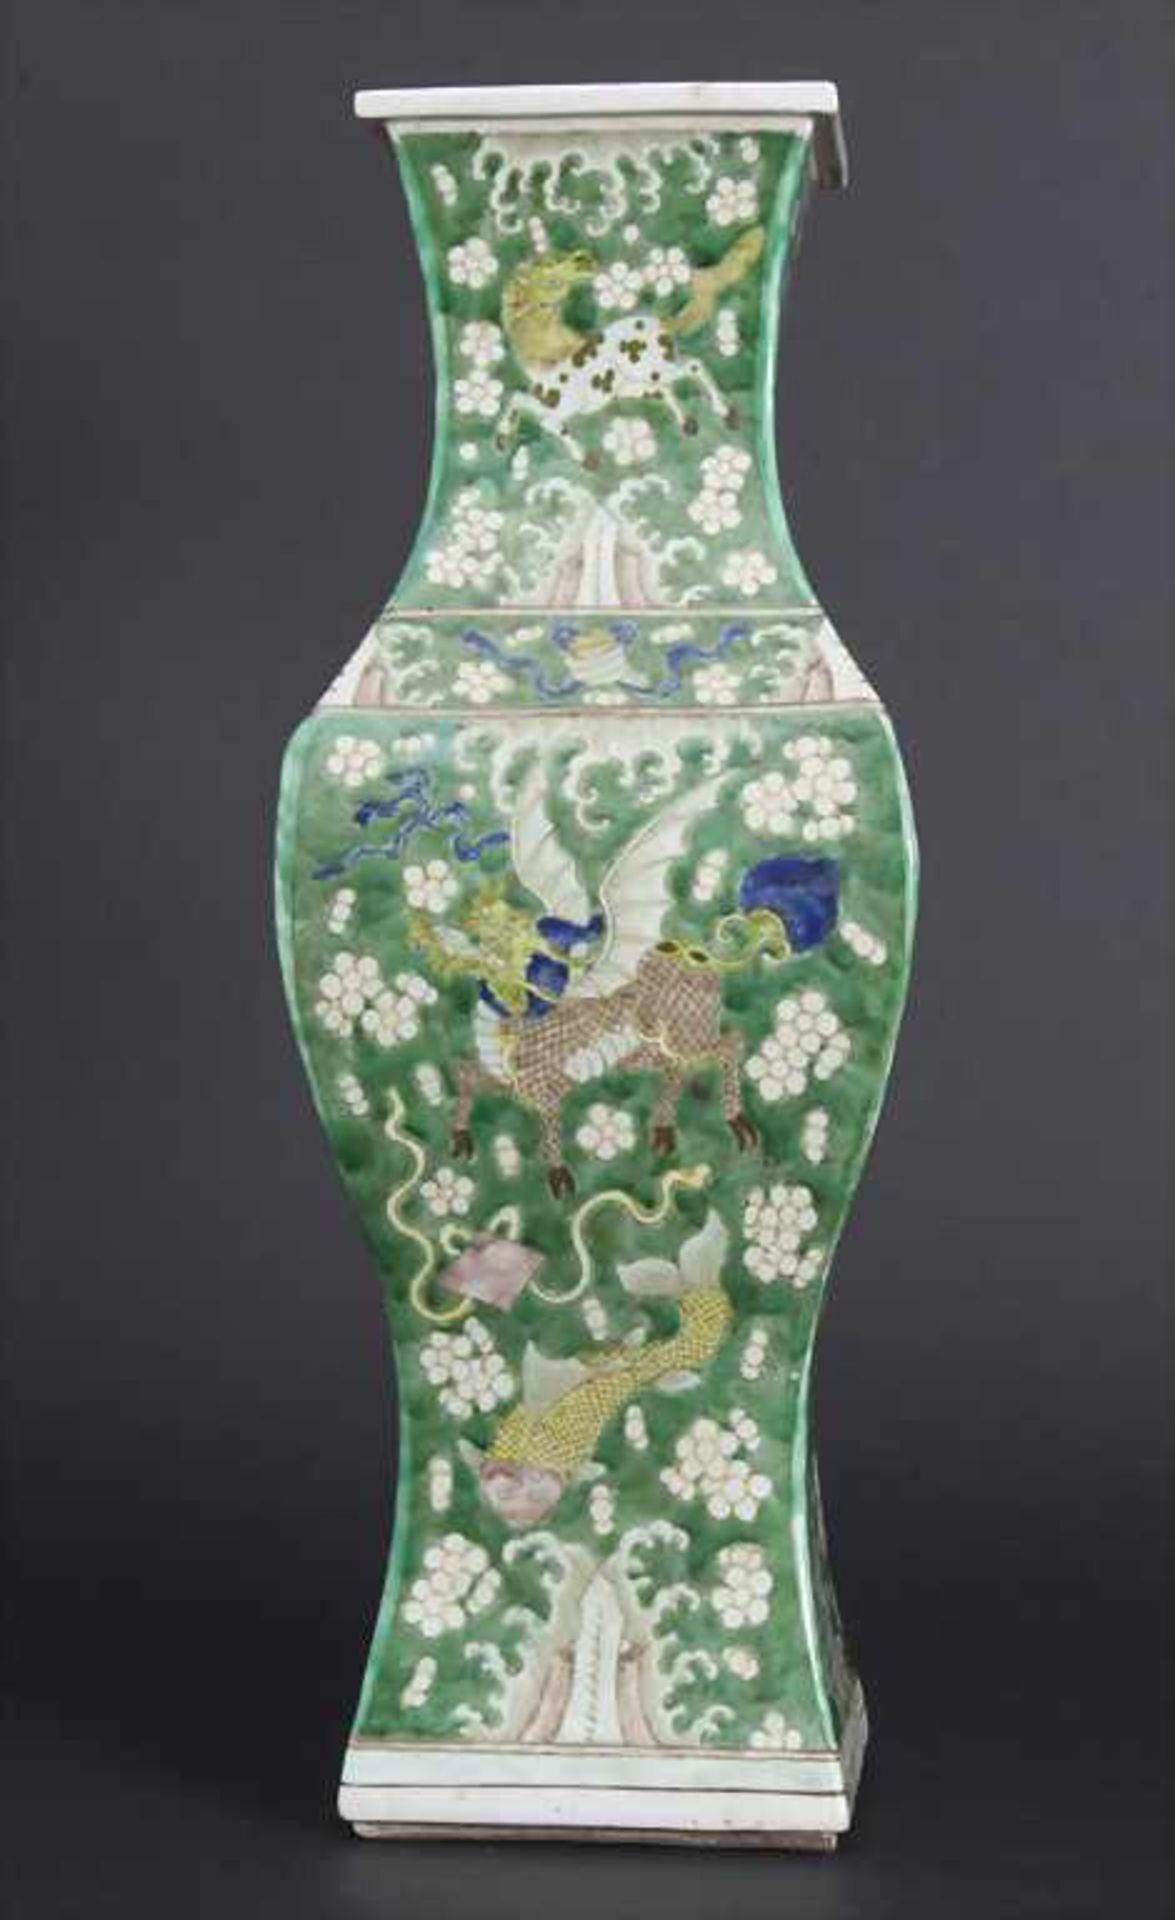 Ziervase, China, späte Qing-Dynastie, 19./20. Jh.Material: Porzellan, polychrom bemalt,Marke/ - Bild 2 aus 17